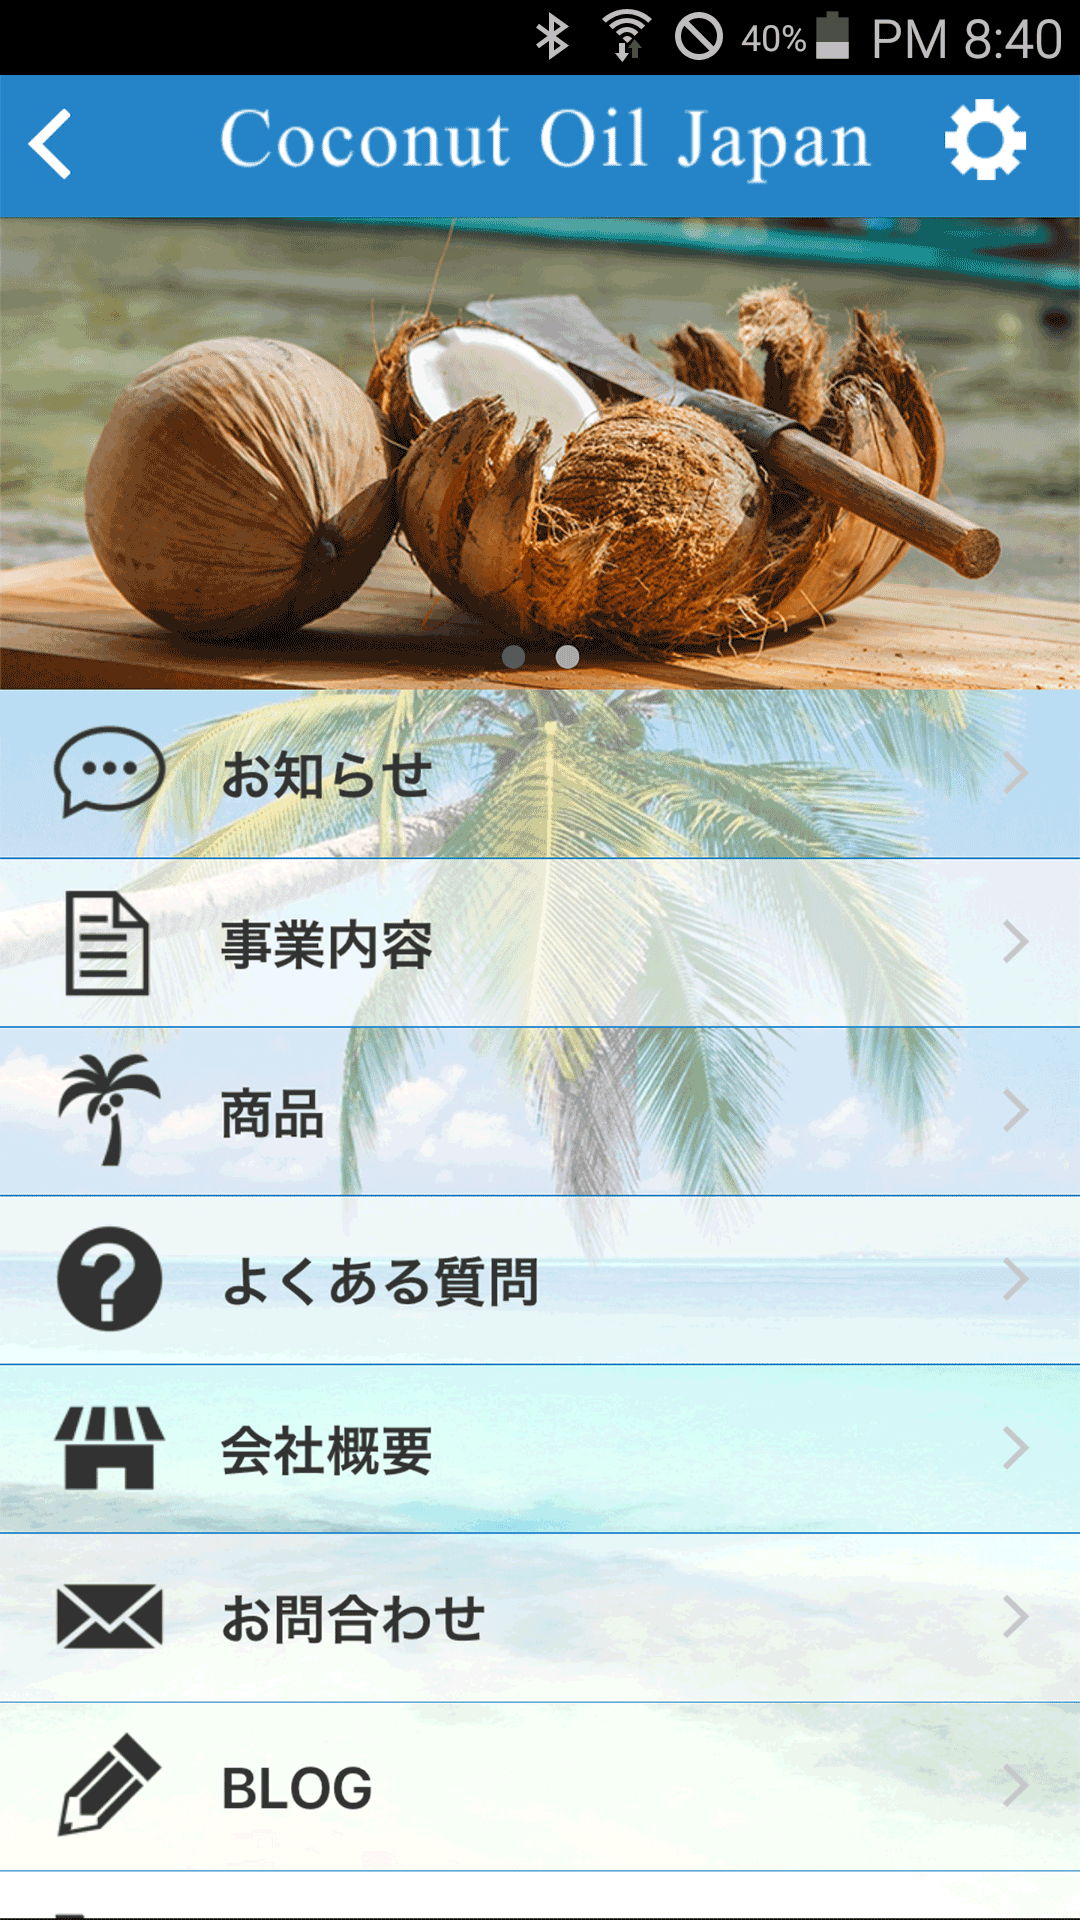 Android application 美容や健康に！オーガニック商品通販 ココナッツオイルジャパン screenshort